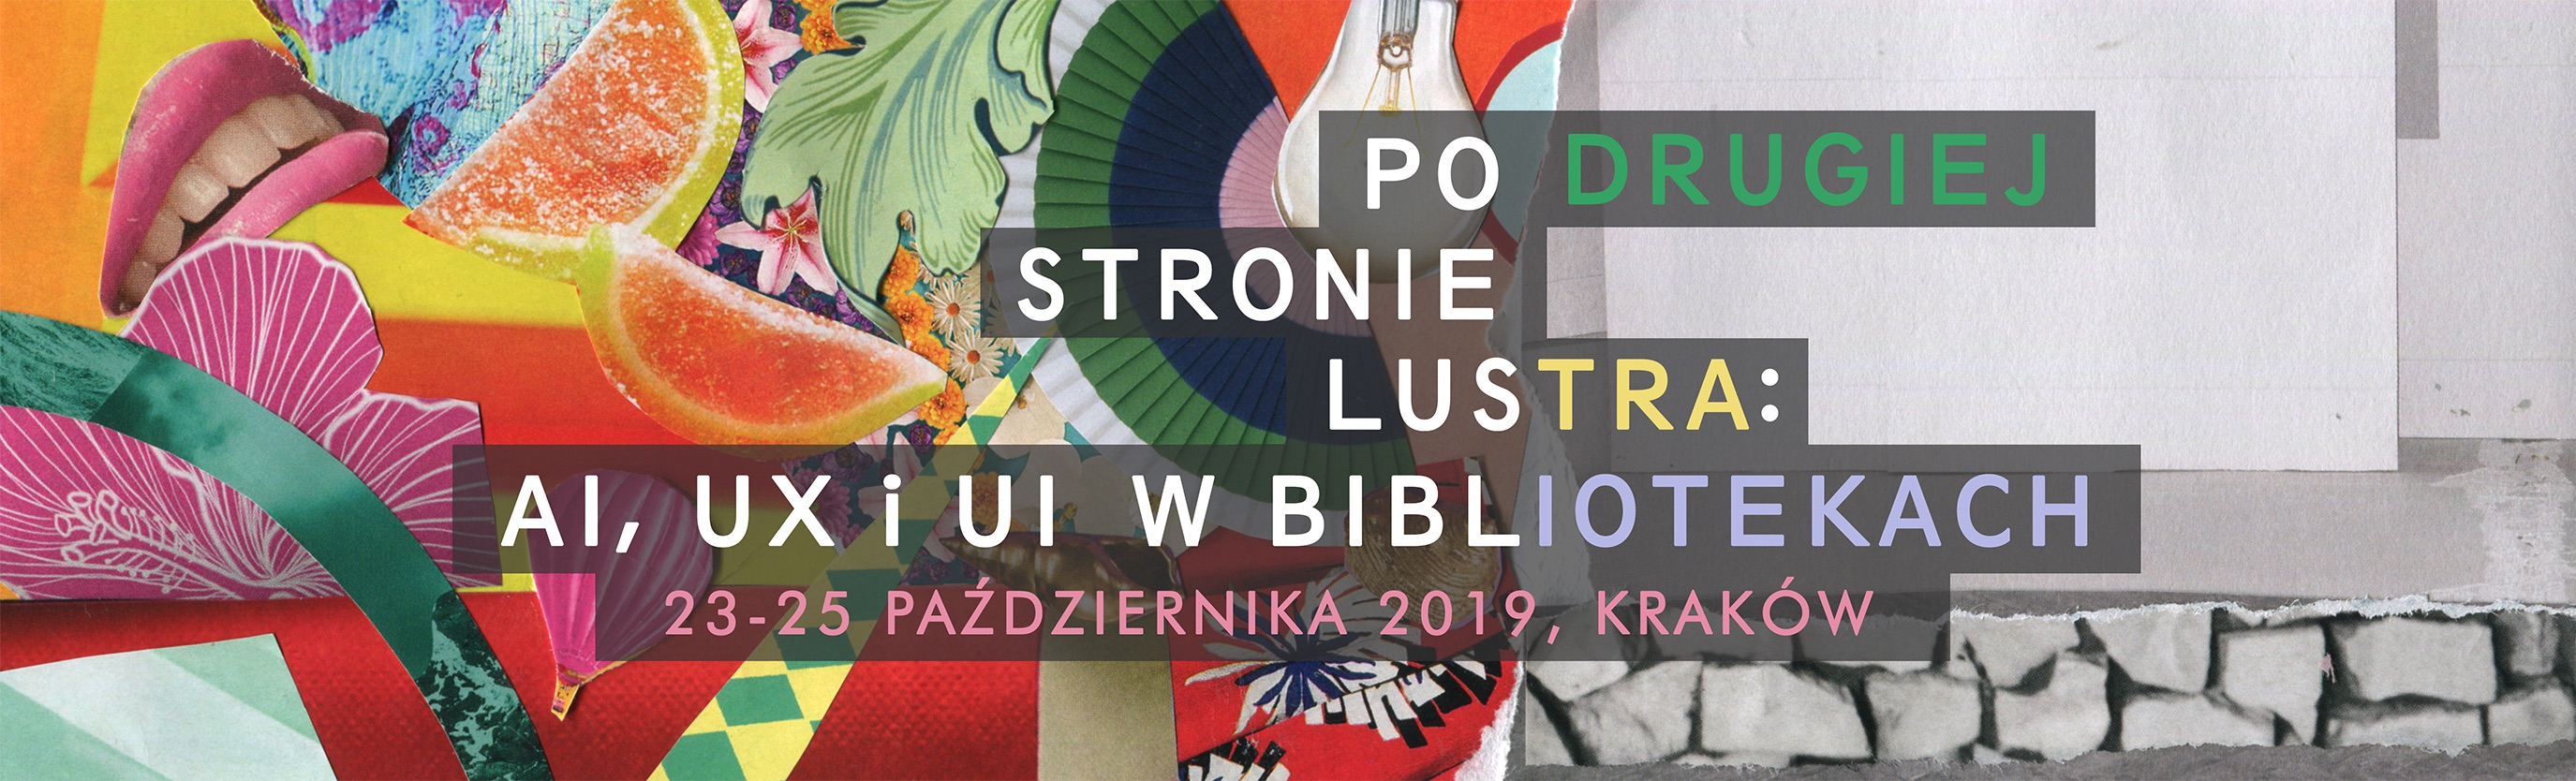 Małopolskie Forum Bibliotek